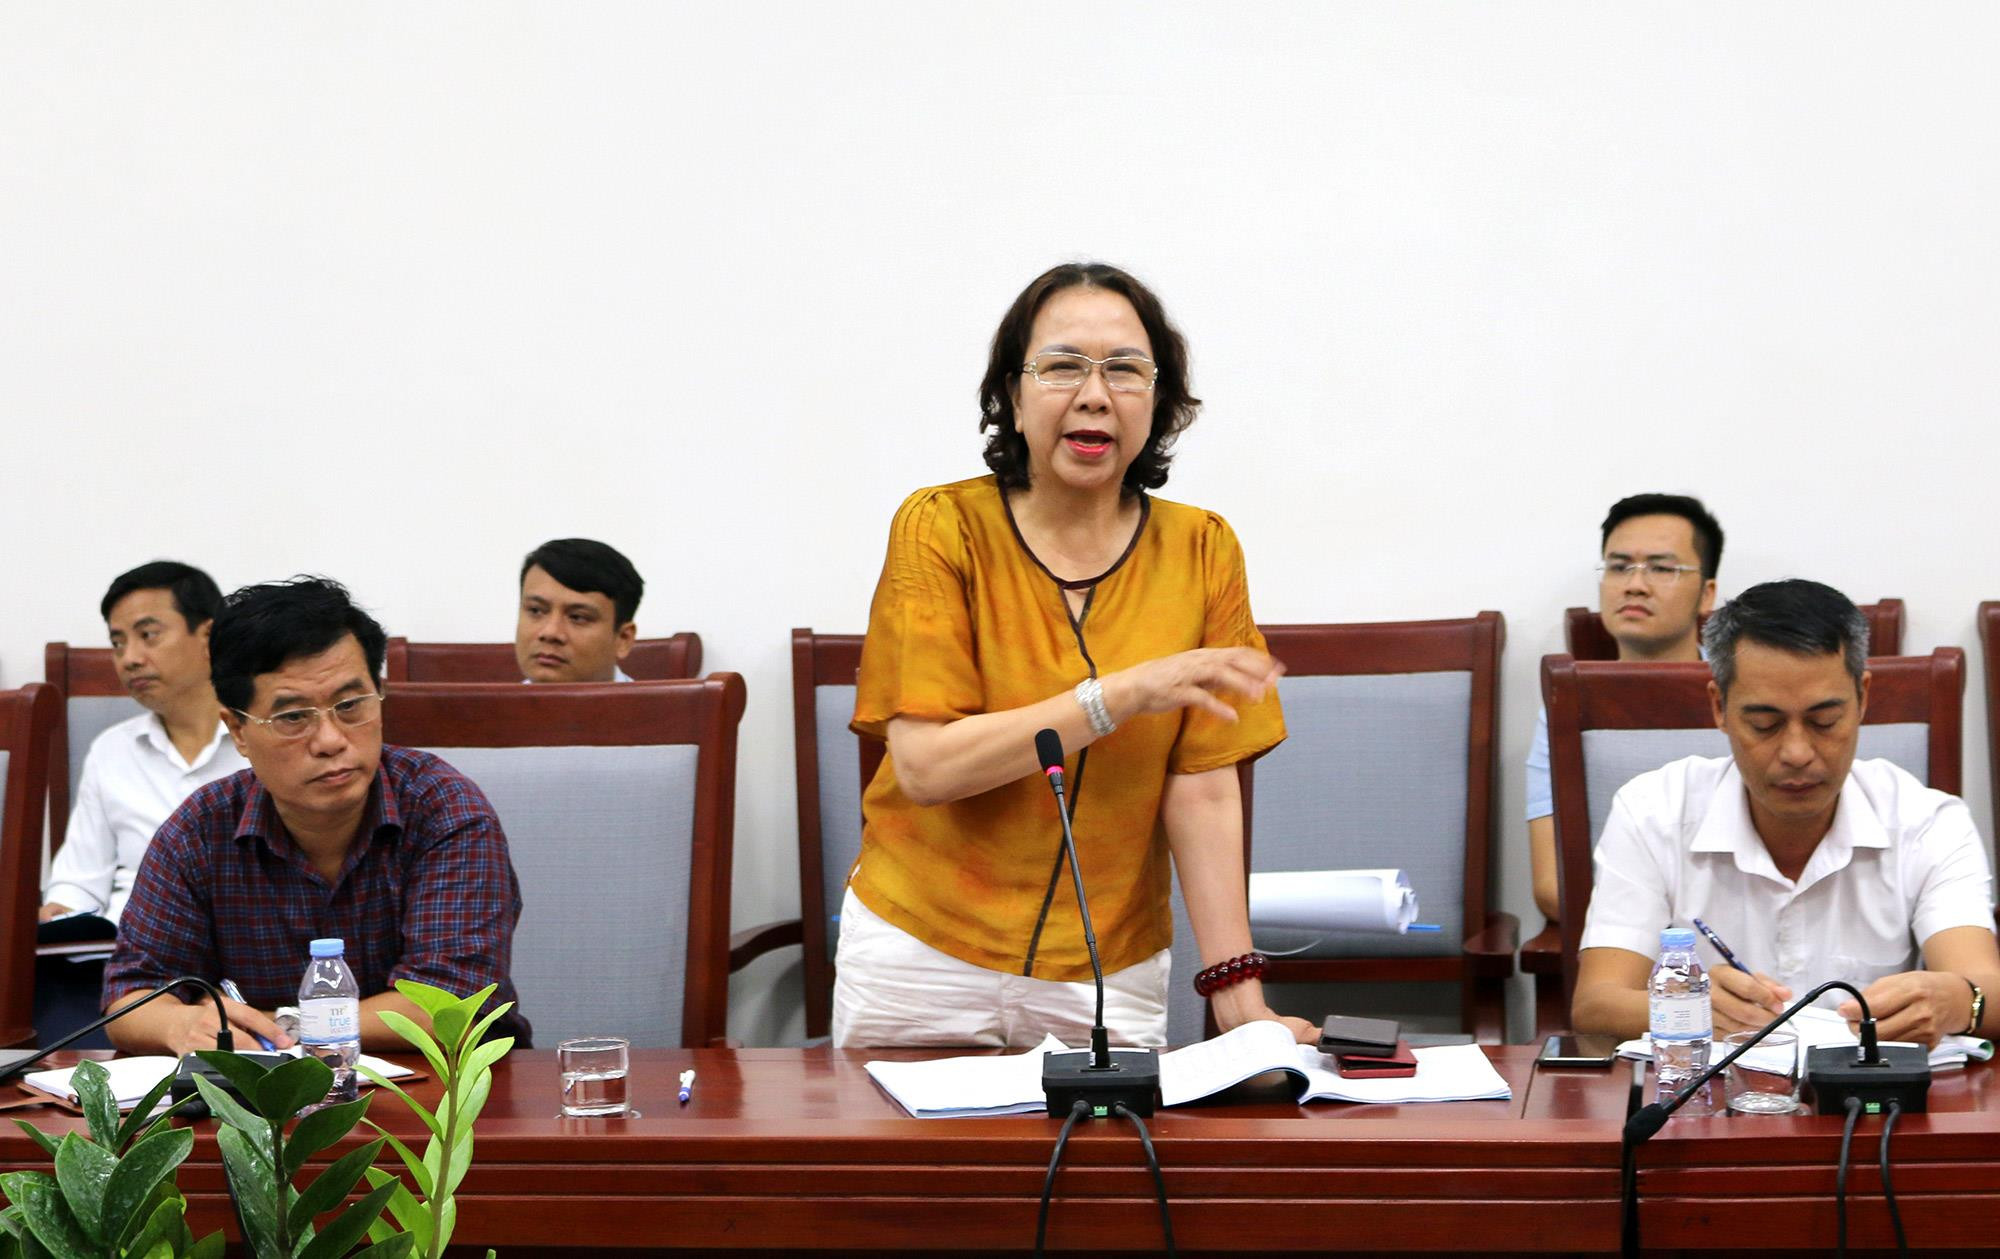 Bà Chu Thị Thành, Chủ tịch HĐQT Công ty CP Thiên Minh Đức đề nghị tỉnh làm nhanh giải phóng mặt bằng để tháng 9/2020 đưa Trung tâm giống lâm nghiệp ở Nghi Lộc đi vào hoạt động. Ảnh: Thu Huyền